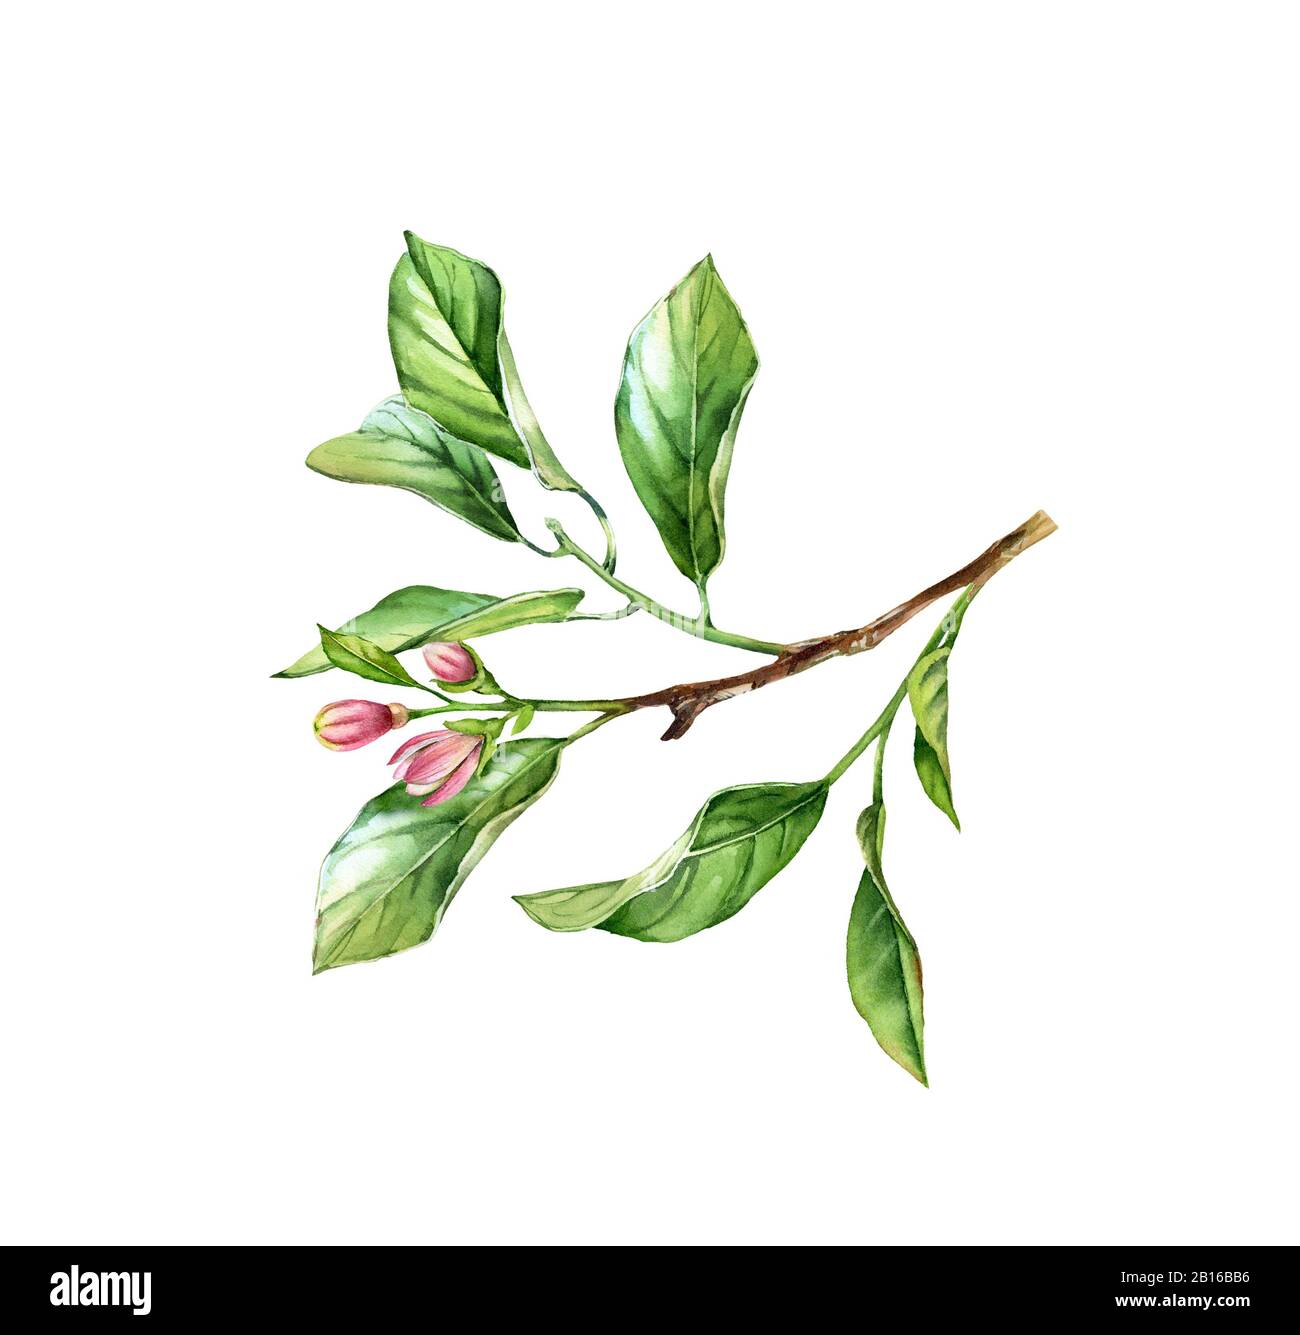 Wasserfarben-Baumzweig. Realistischer Obstbaum, Blumen, Blätter. Botanische Illustration. Isoliertes Bildmaterial auf weiß. Handgemaltes Laub Stockfoto